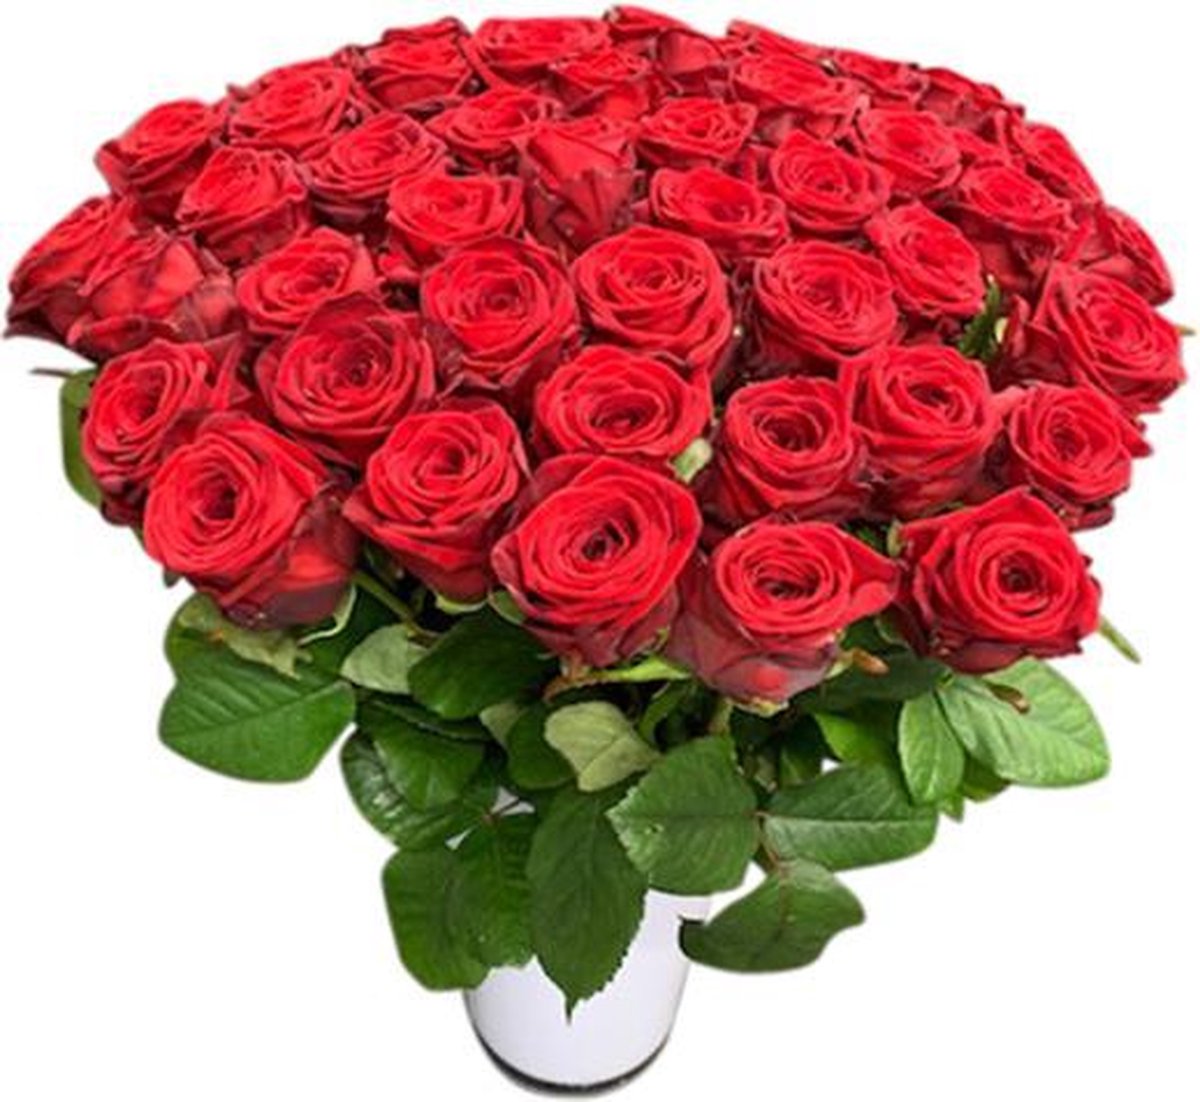 50 rode rozen boeket in vaas | bol.com